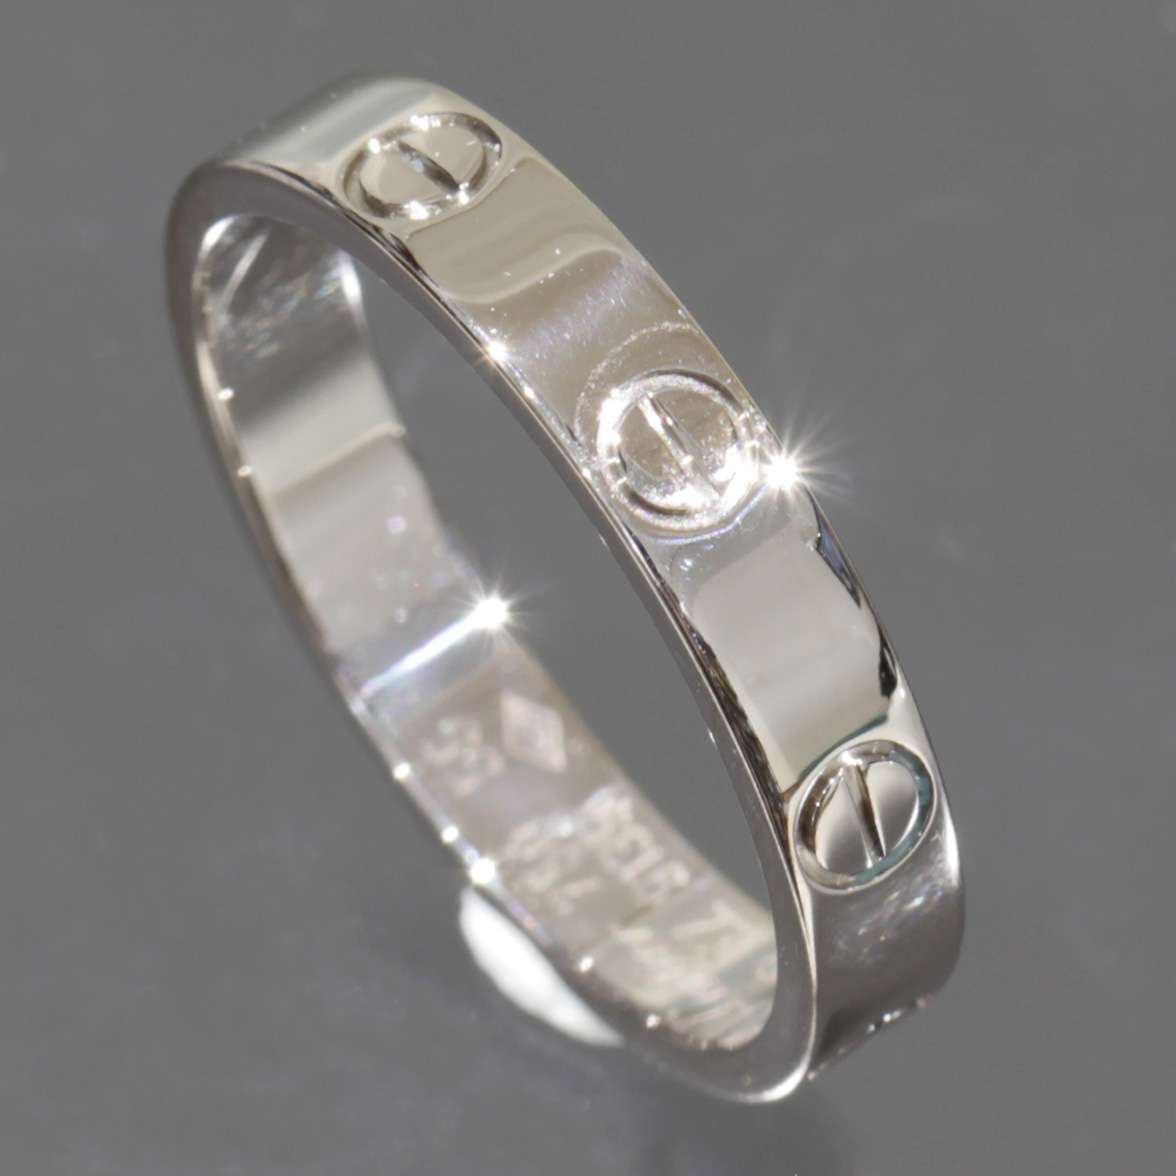 カルティエ Cartier 指輪 ミニラブリング 55 K18 メンズ E0219| 指輪  メンズ指輪  太め  メンズ指輪   ファッションリング 指輪  ホワイトゴールド指輪 メンズ K18指輪  ブランド